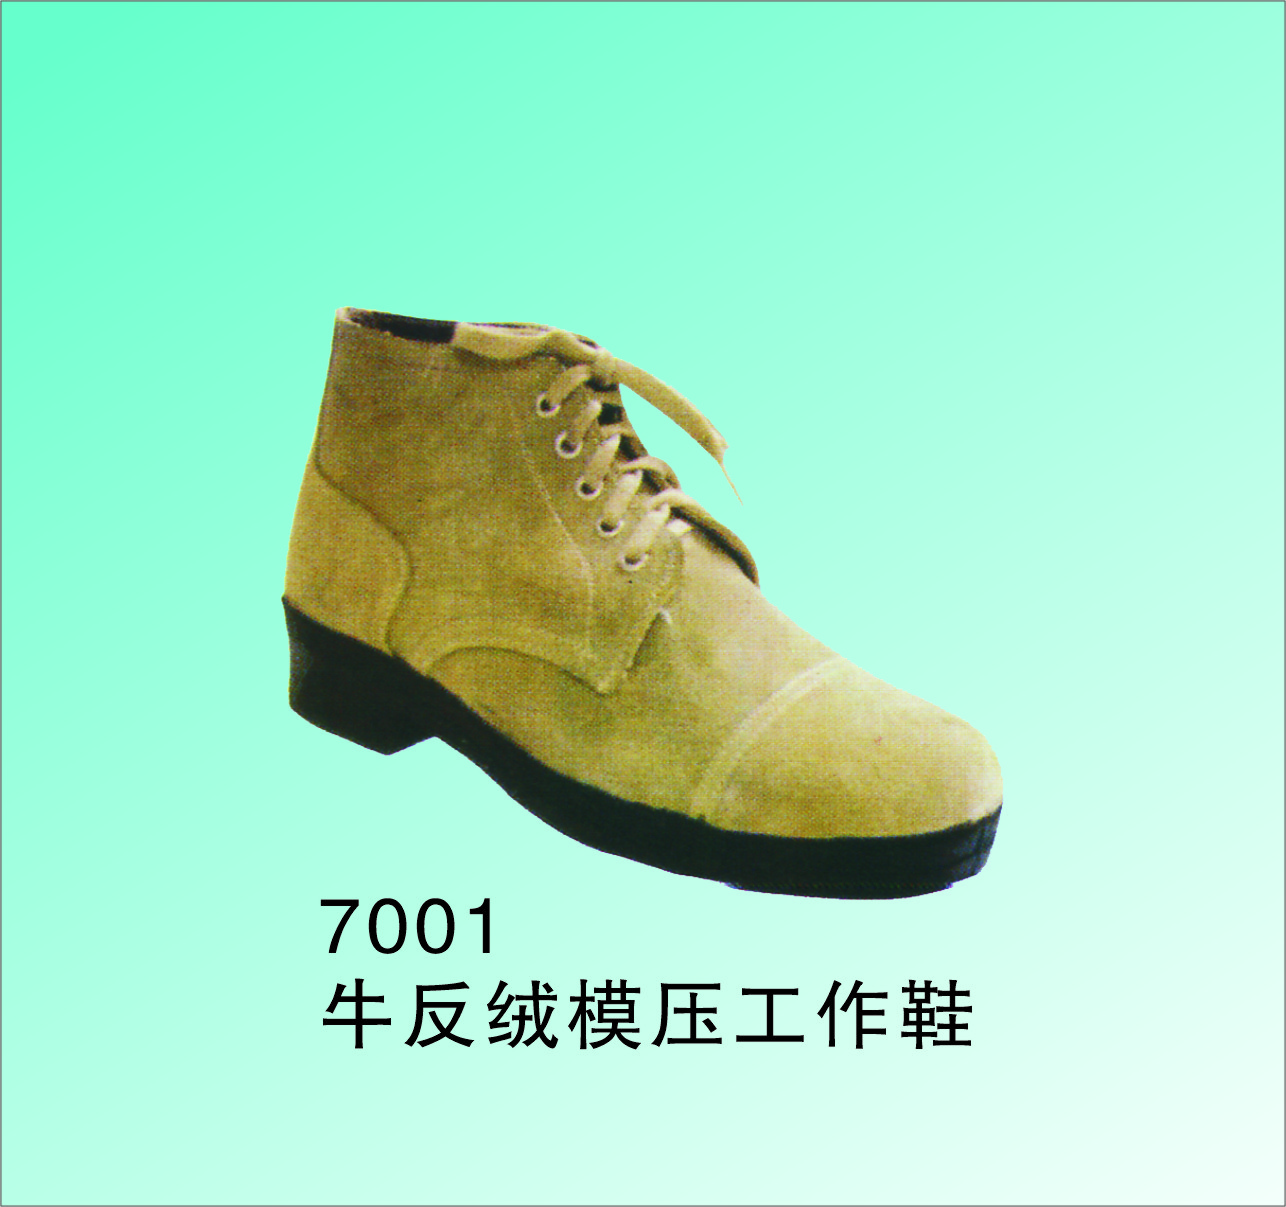 手工制 防砸耐磨工作鞋 牛面纯棉里优质橡胶底 7001